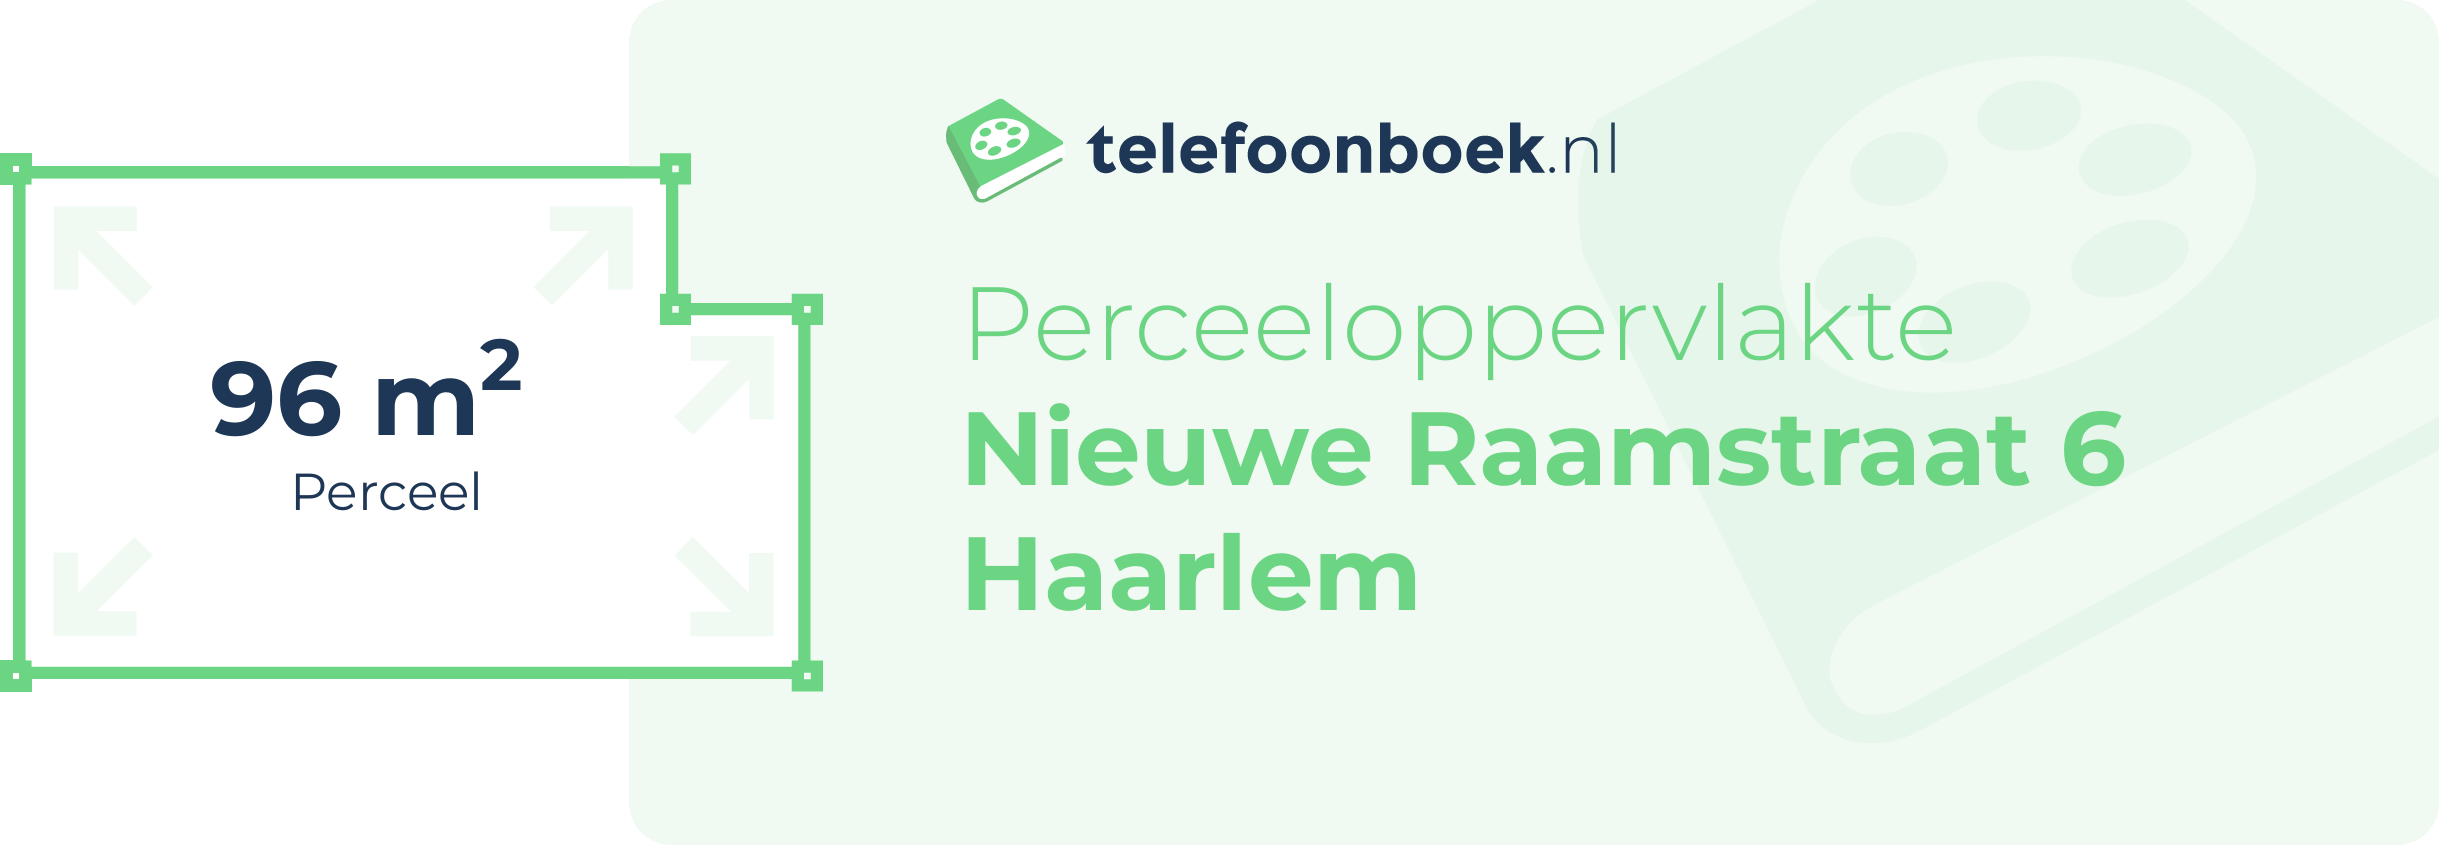 Perceeloppervlakte Nieuwe Raamstraat 6 Haarlem